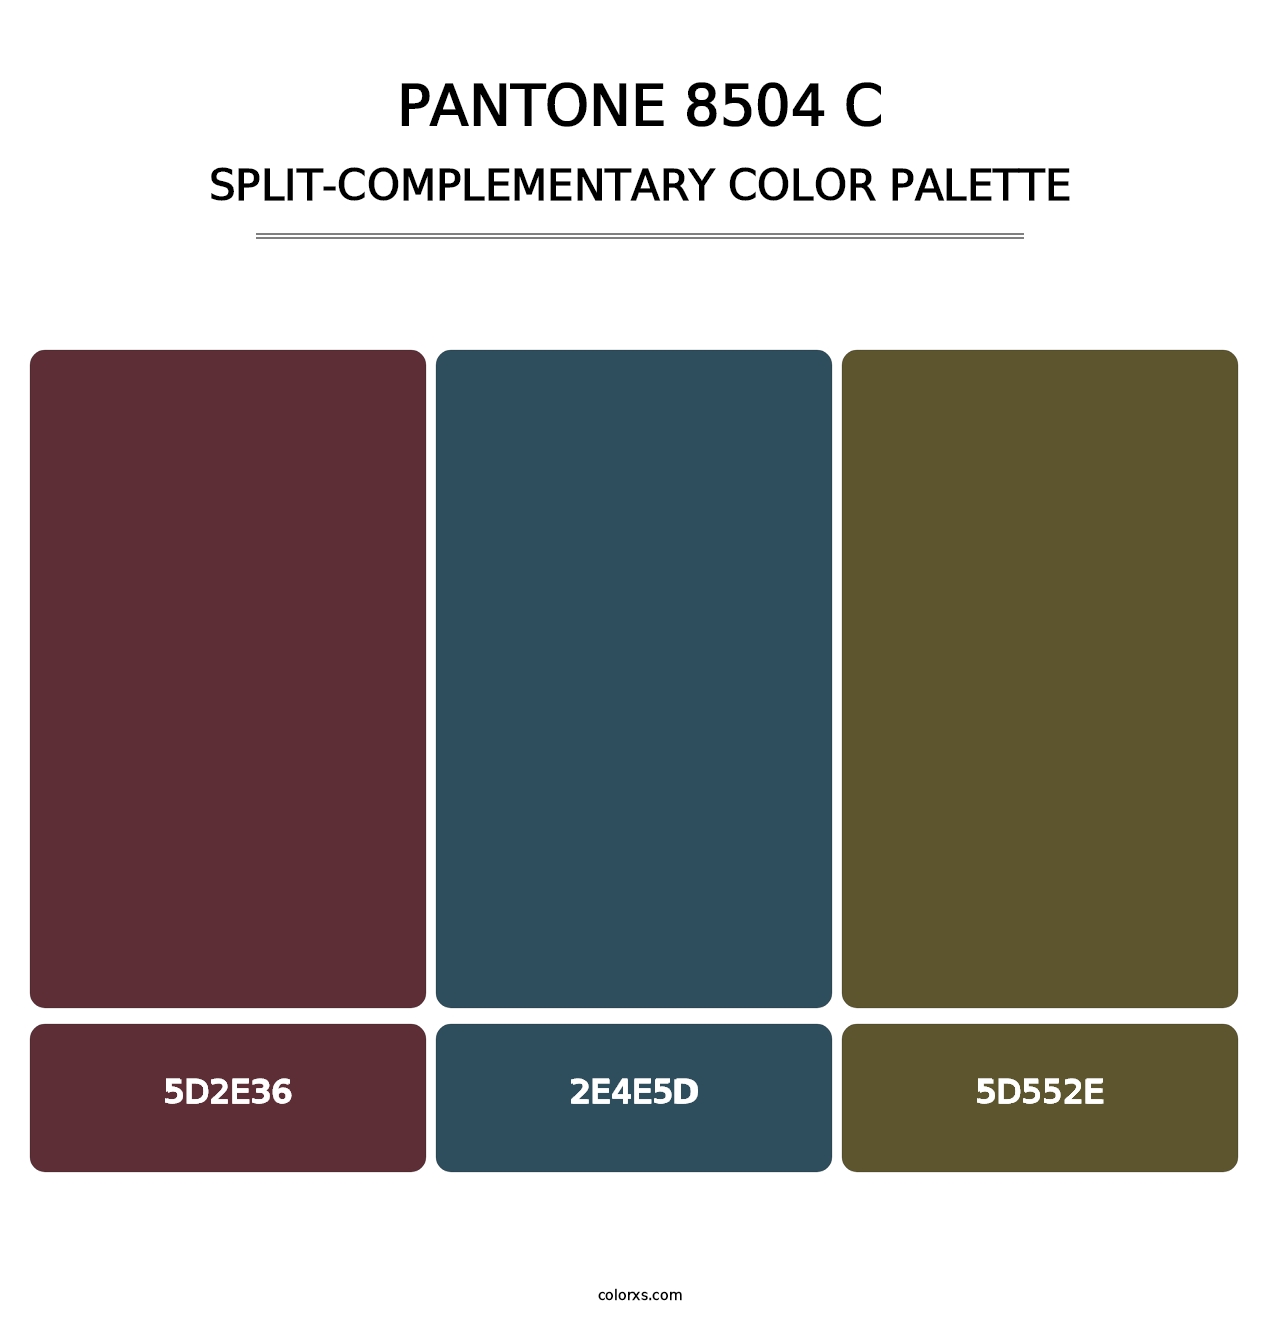 PANTONE 8504 C - Split-Complementary Color Palette